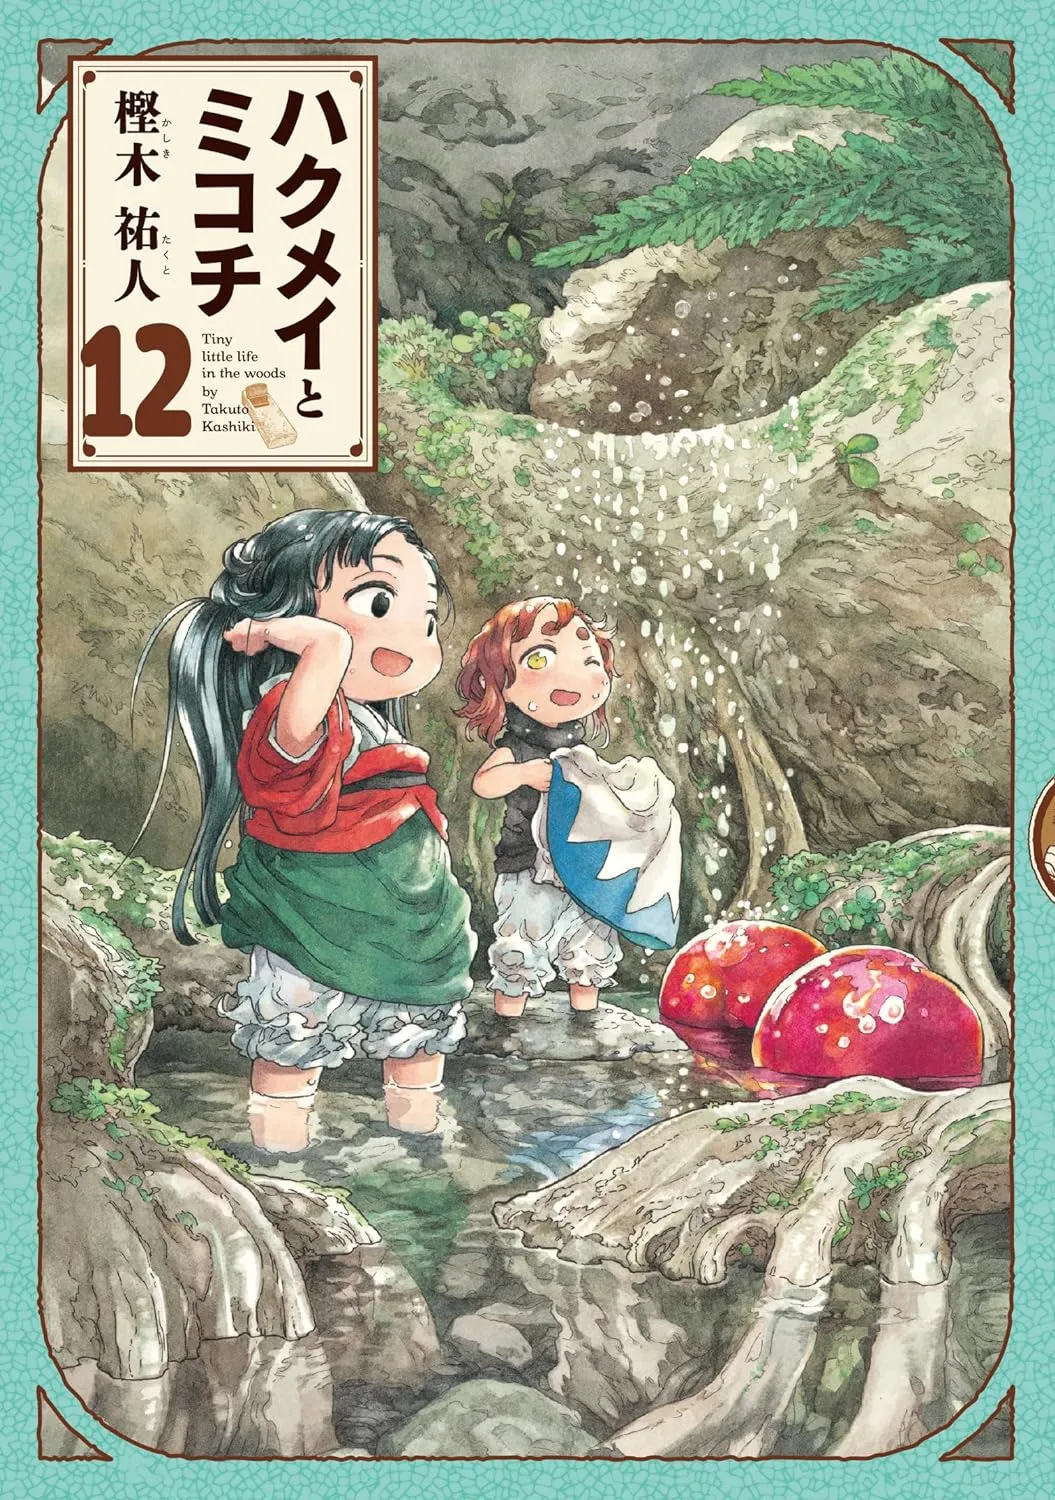 Hakumei and Mikochi